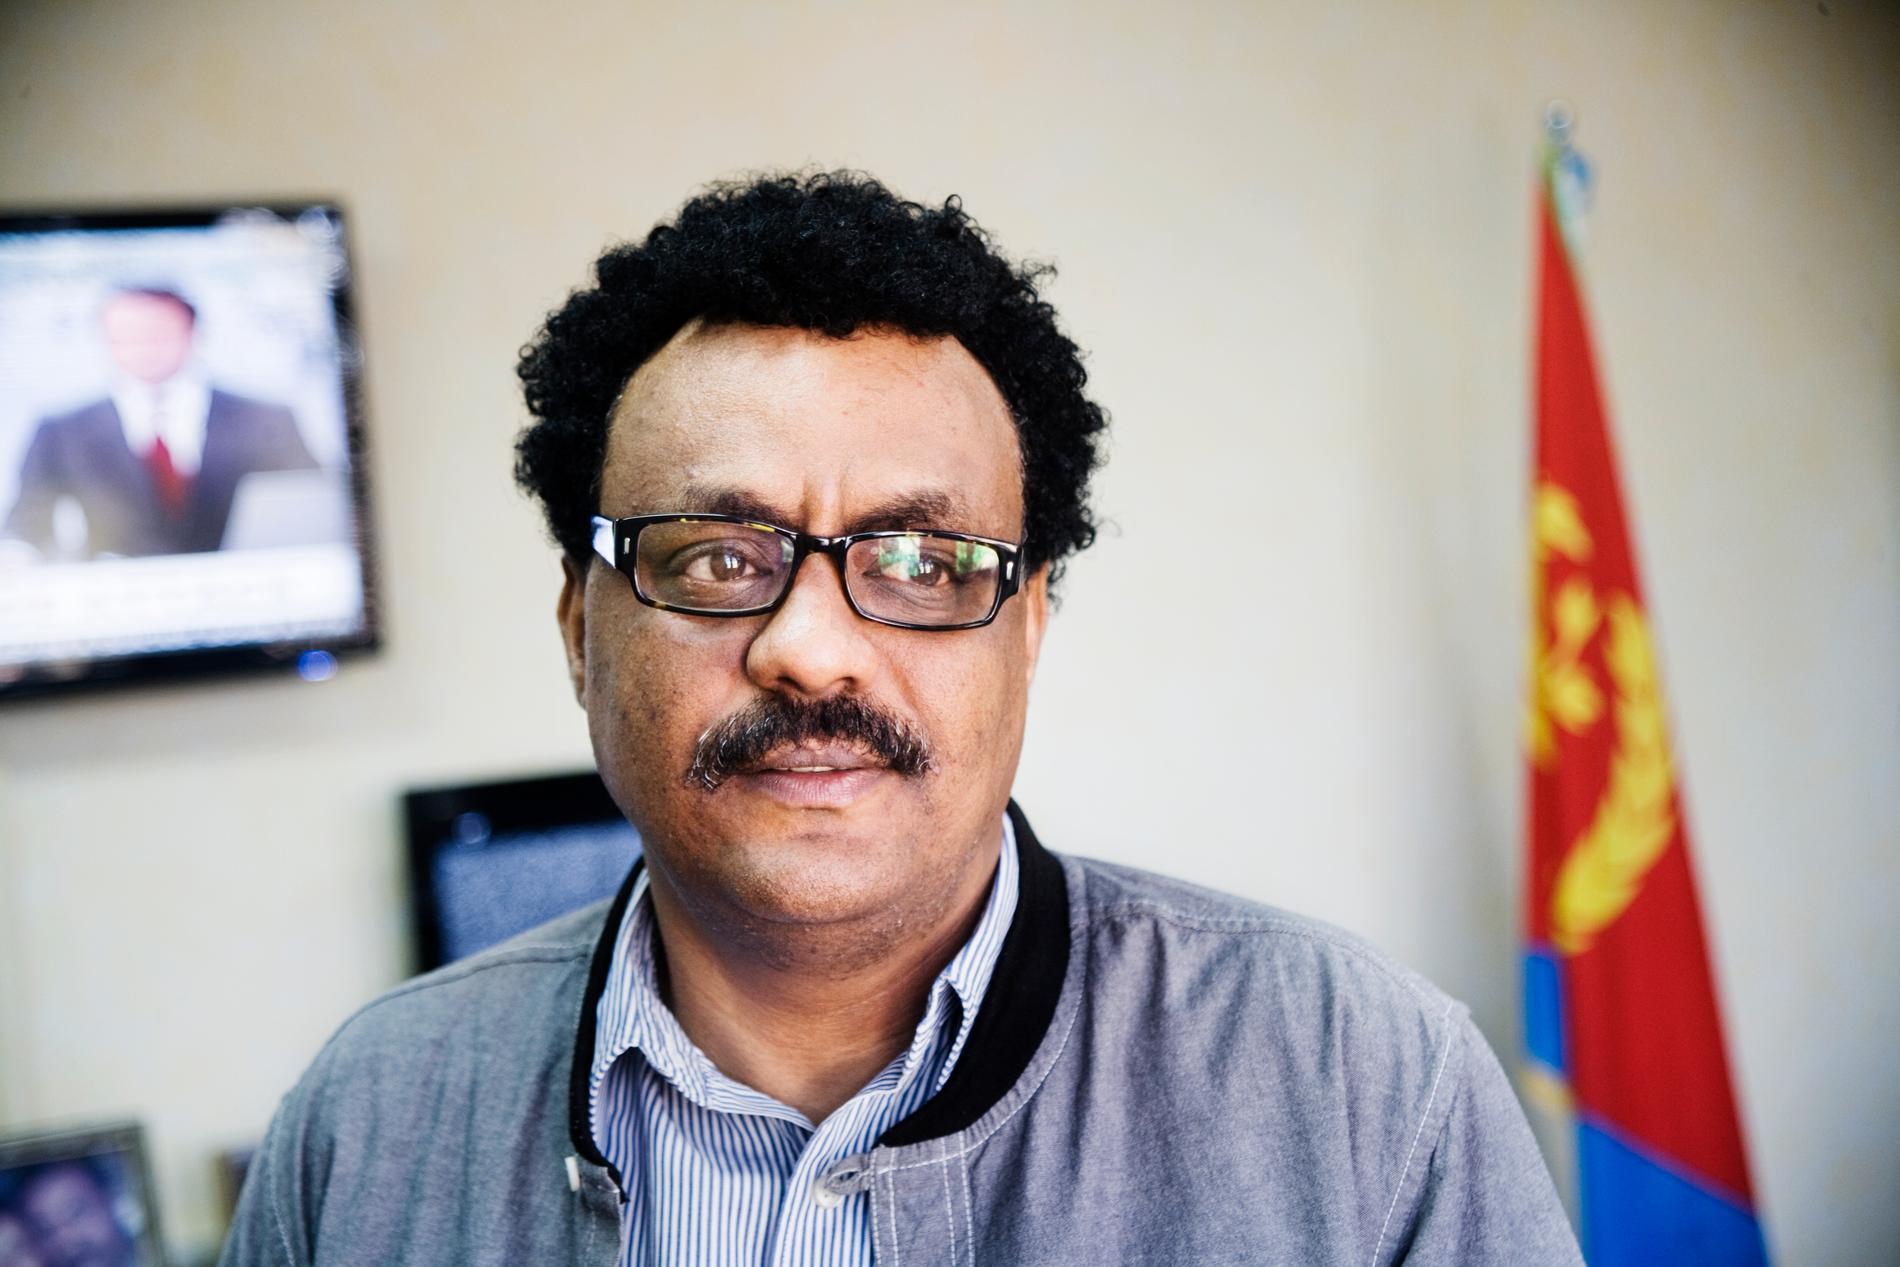 VILLE HJÄLPA Ali Abdu på sitt kontor på informationsministeriet i huvudstaden Asmara, maj 2012. Jag tog bilden vid det sista mötet som jag refererar till i texten.